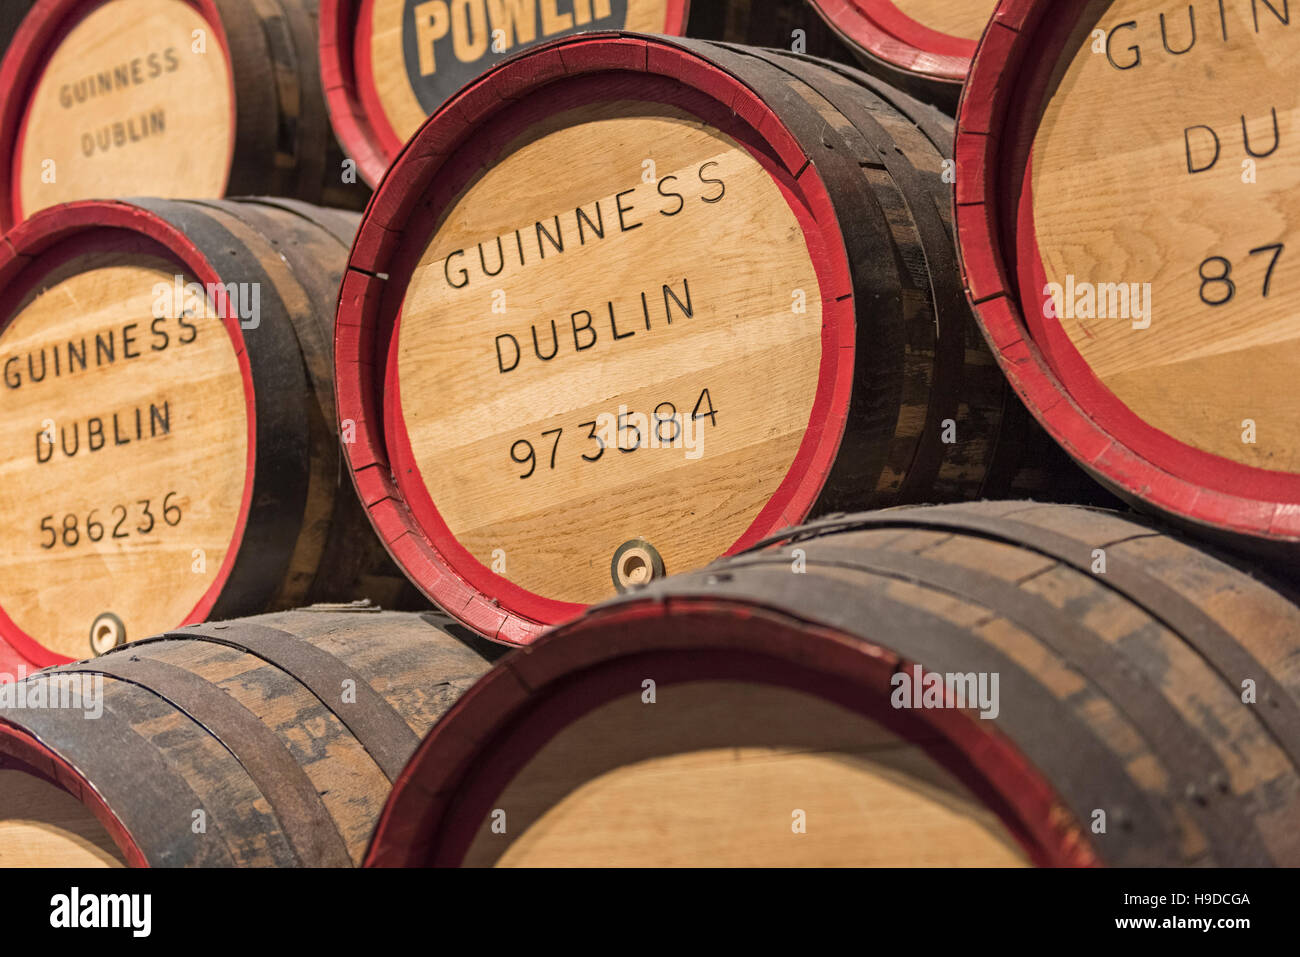 Barils de bière Guinness Storehouse Dublin Ireland Banque D'Images